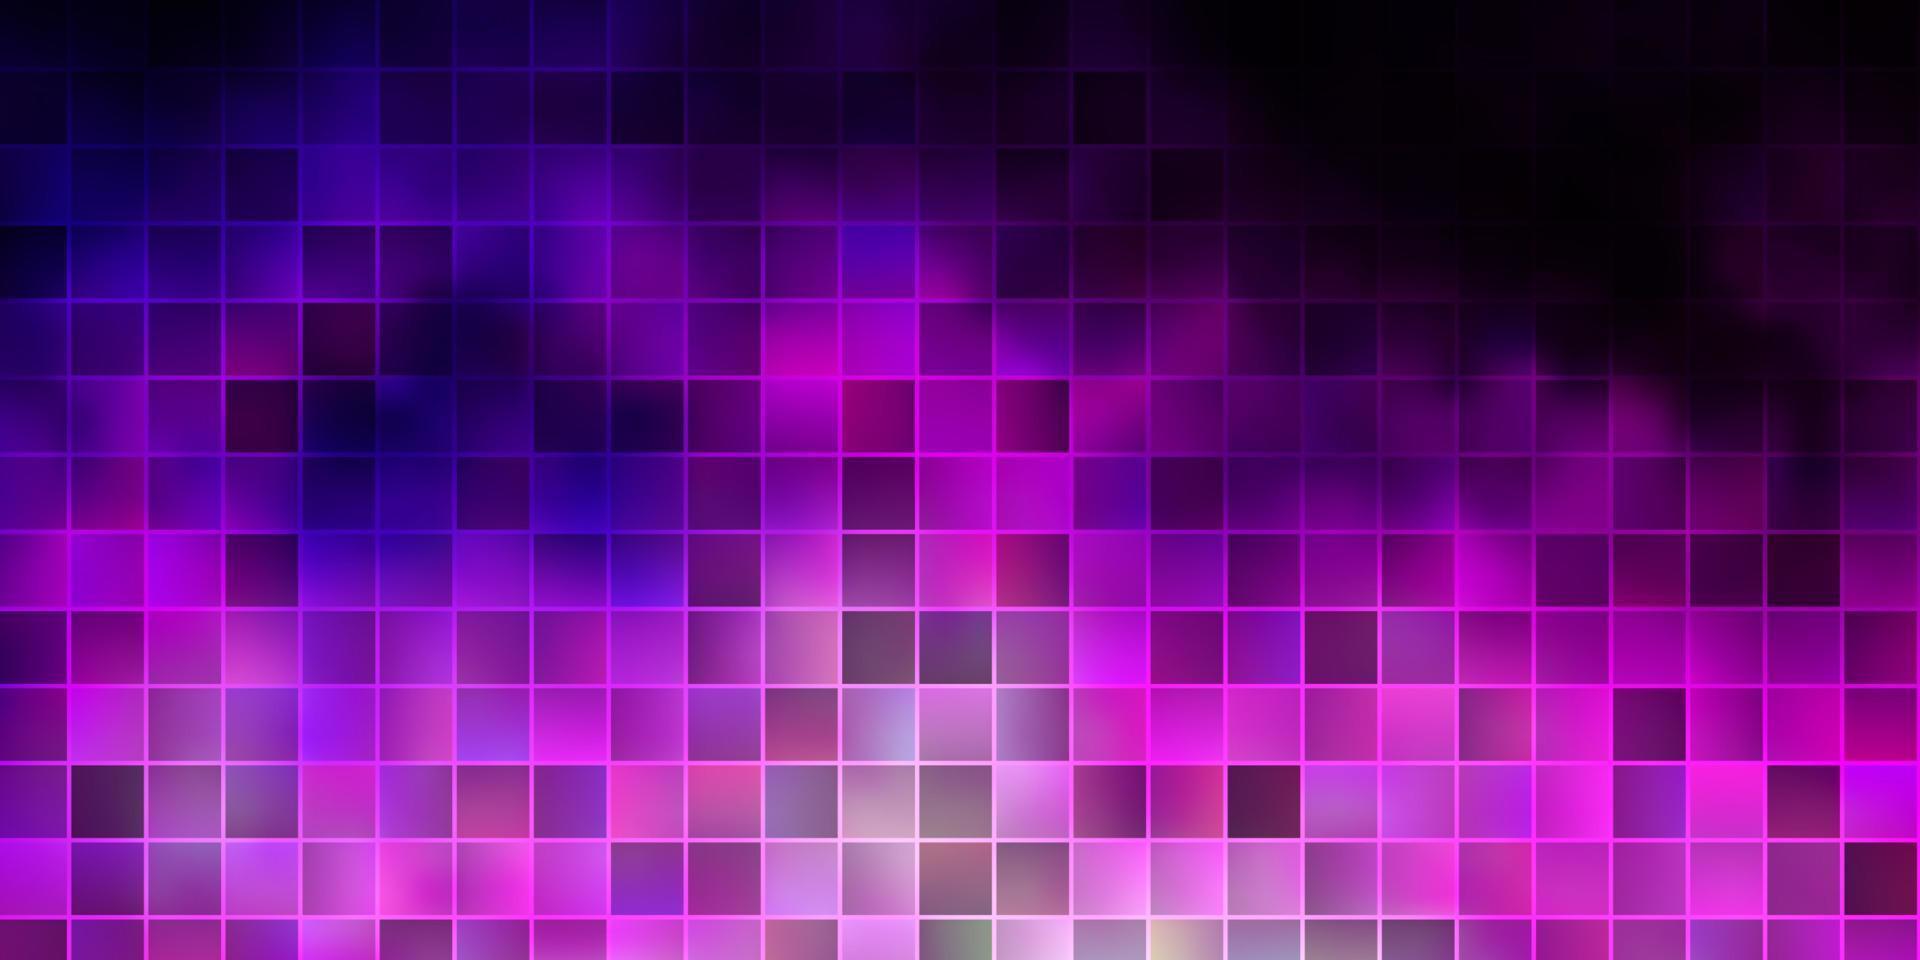 diseño de vector de color púrpura oscuro, rosa con líneas, rectángulos.